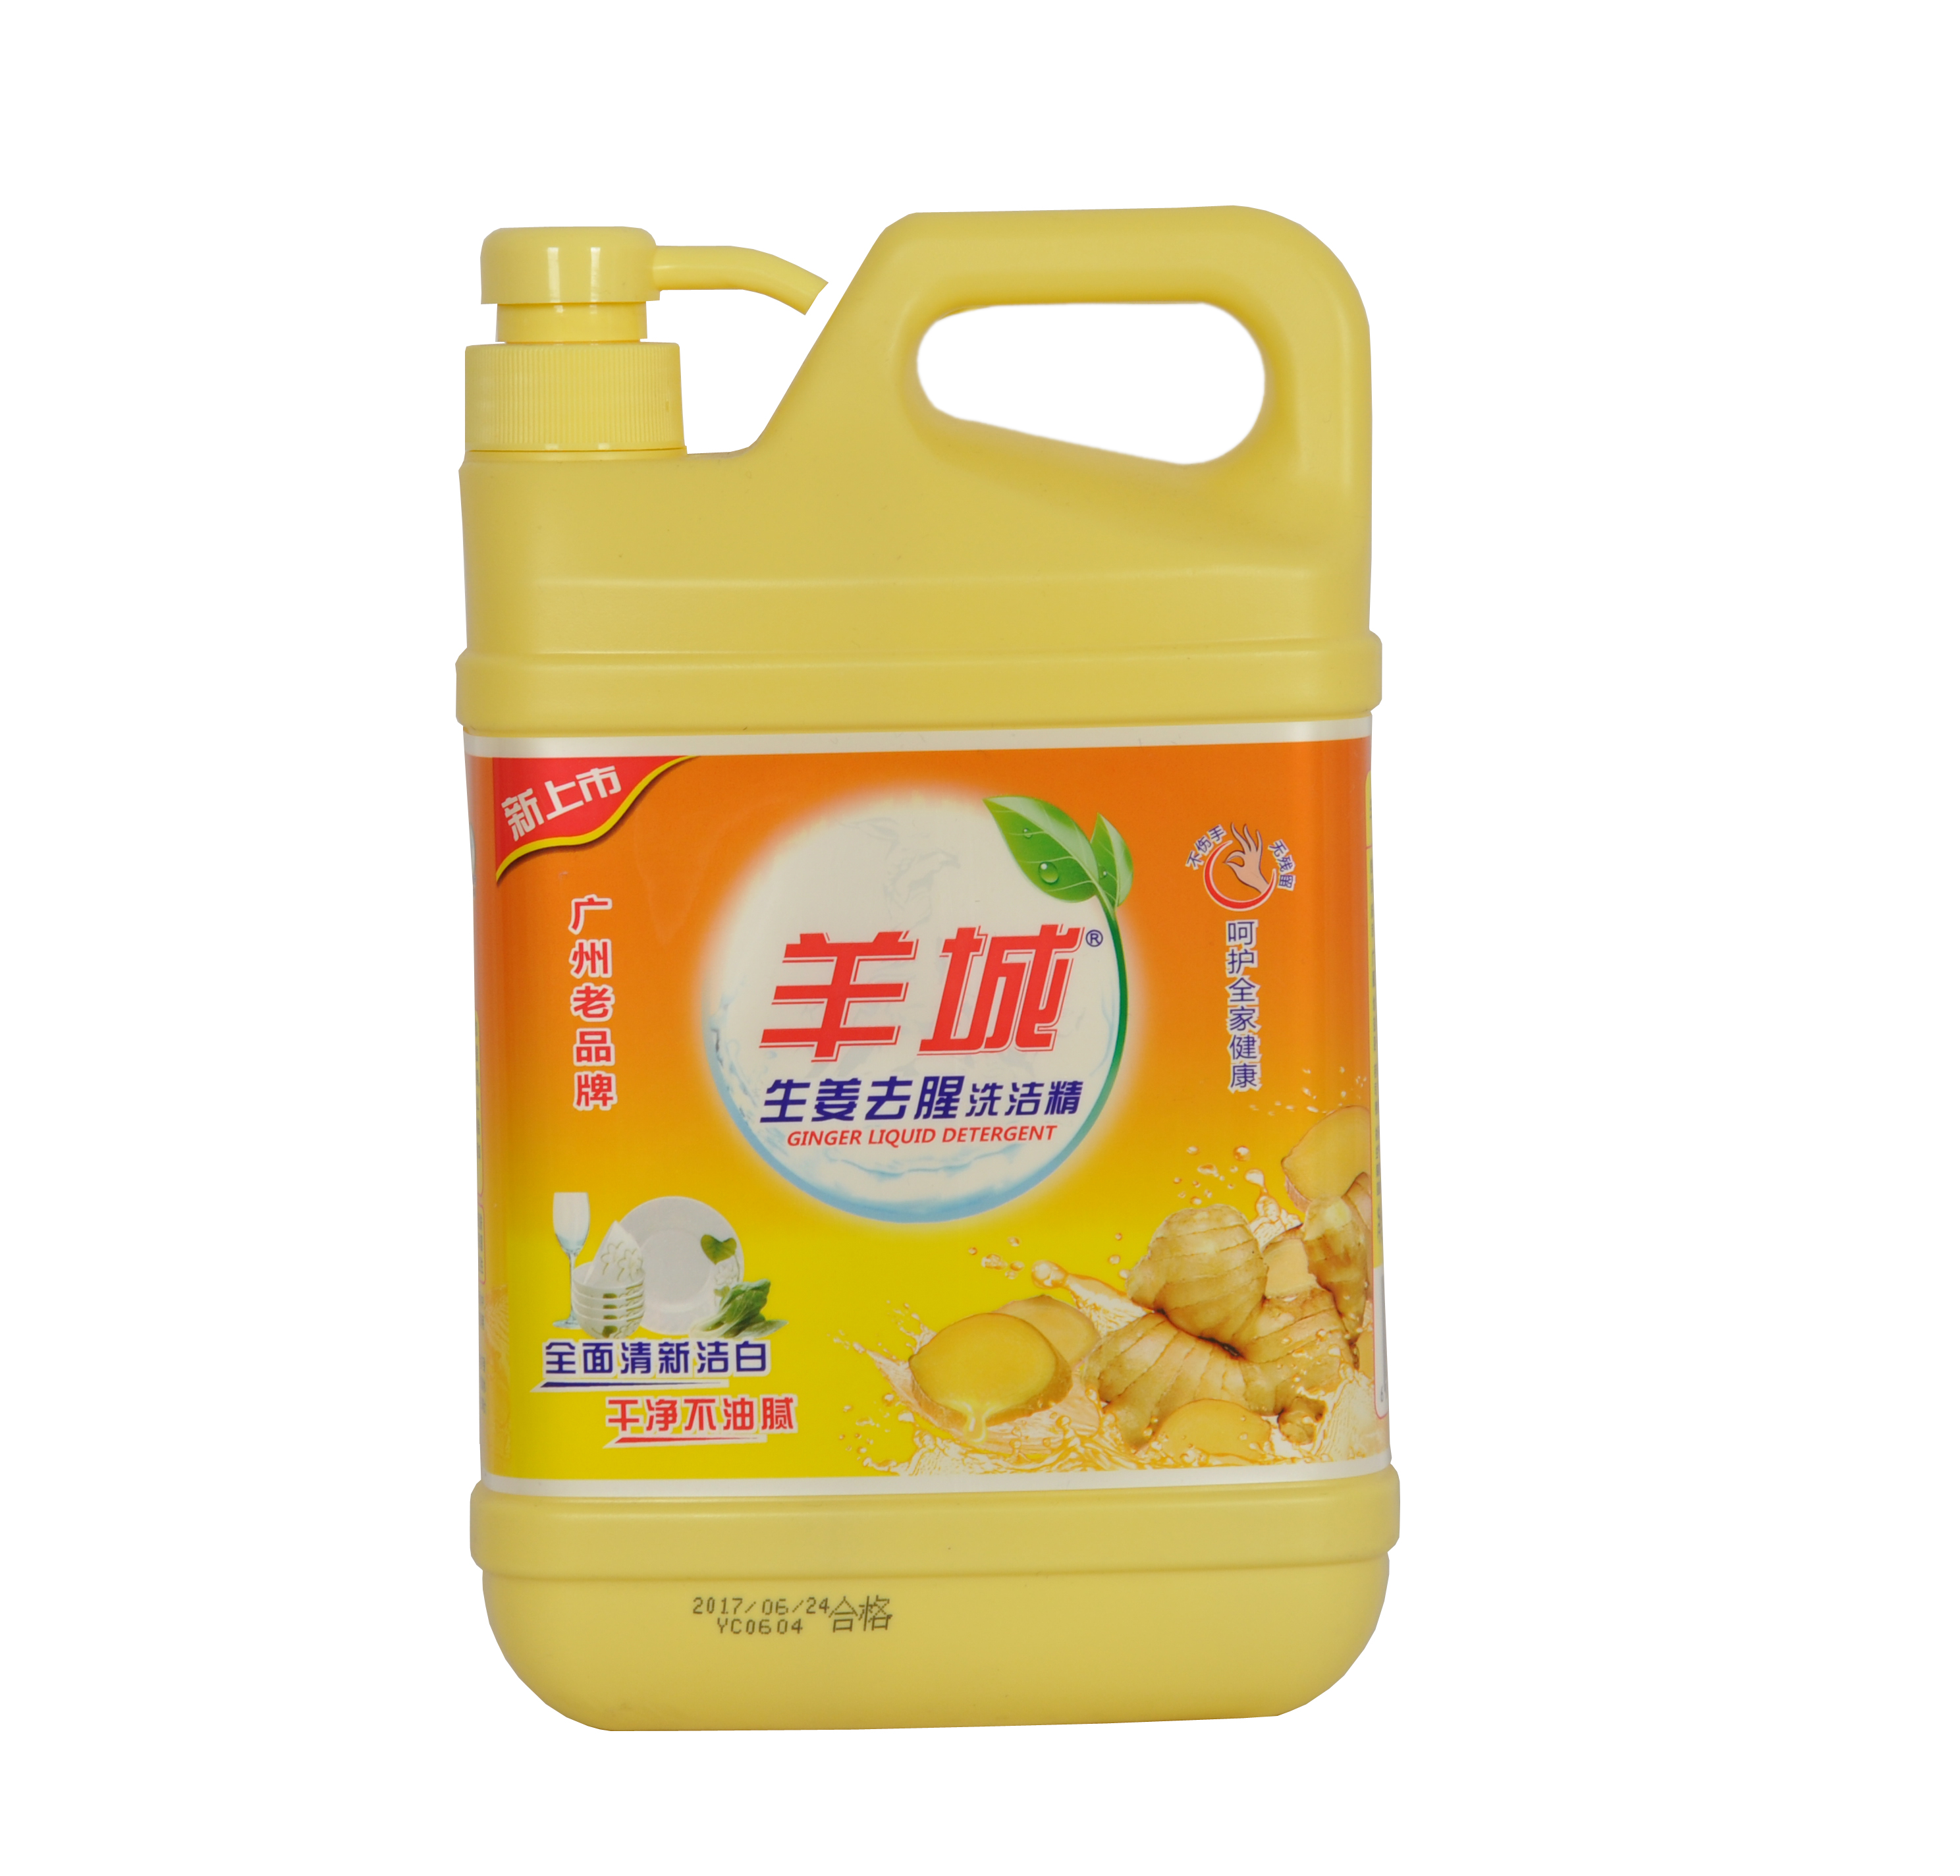 广州老品牌  羊城1.38kg生姜洗洁精 佛山生产厂家直销 招区域经销商 量大优惠